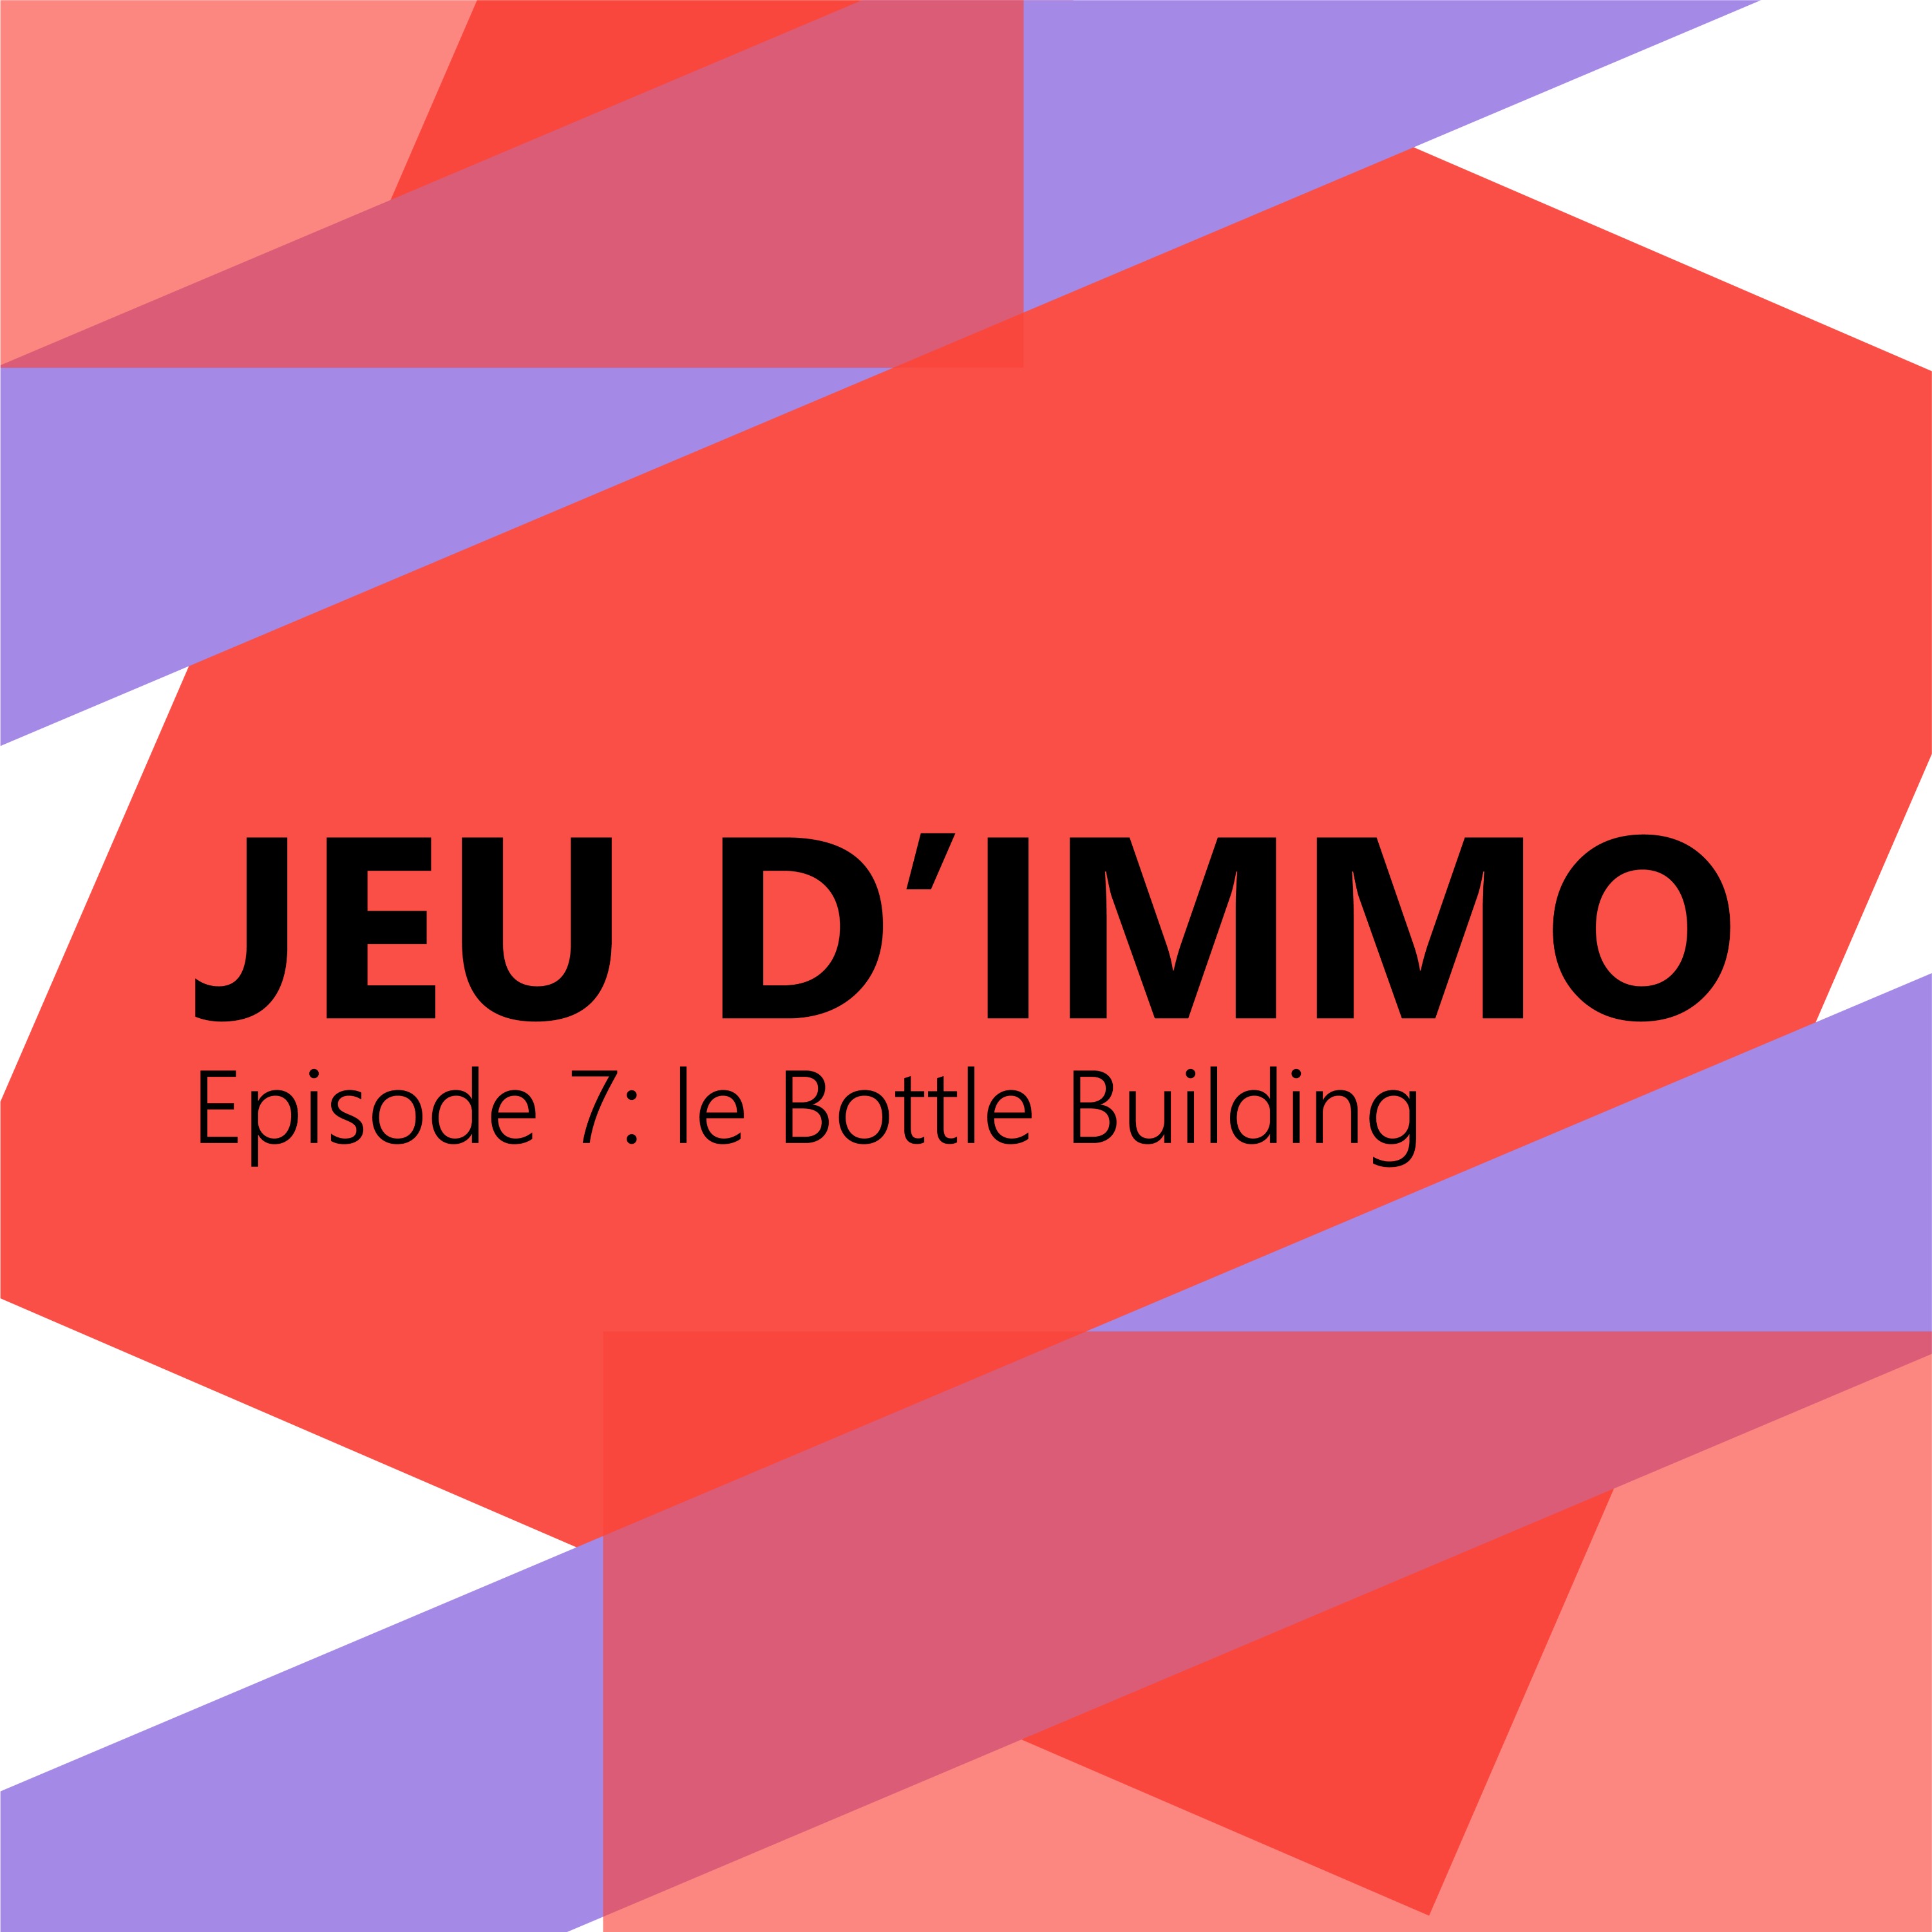 Le "Bottle Building"